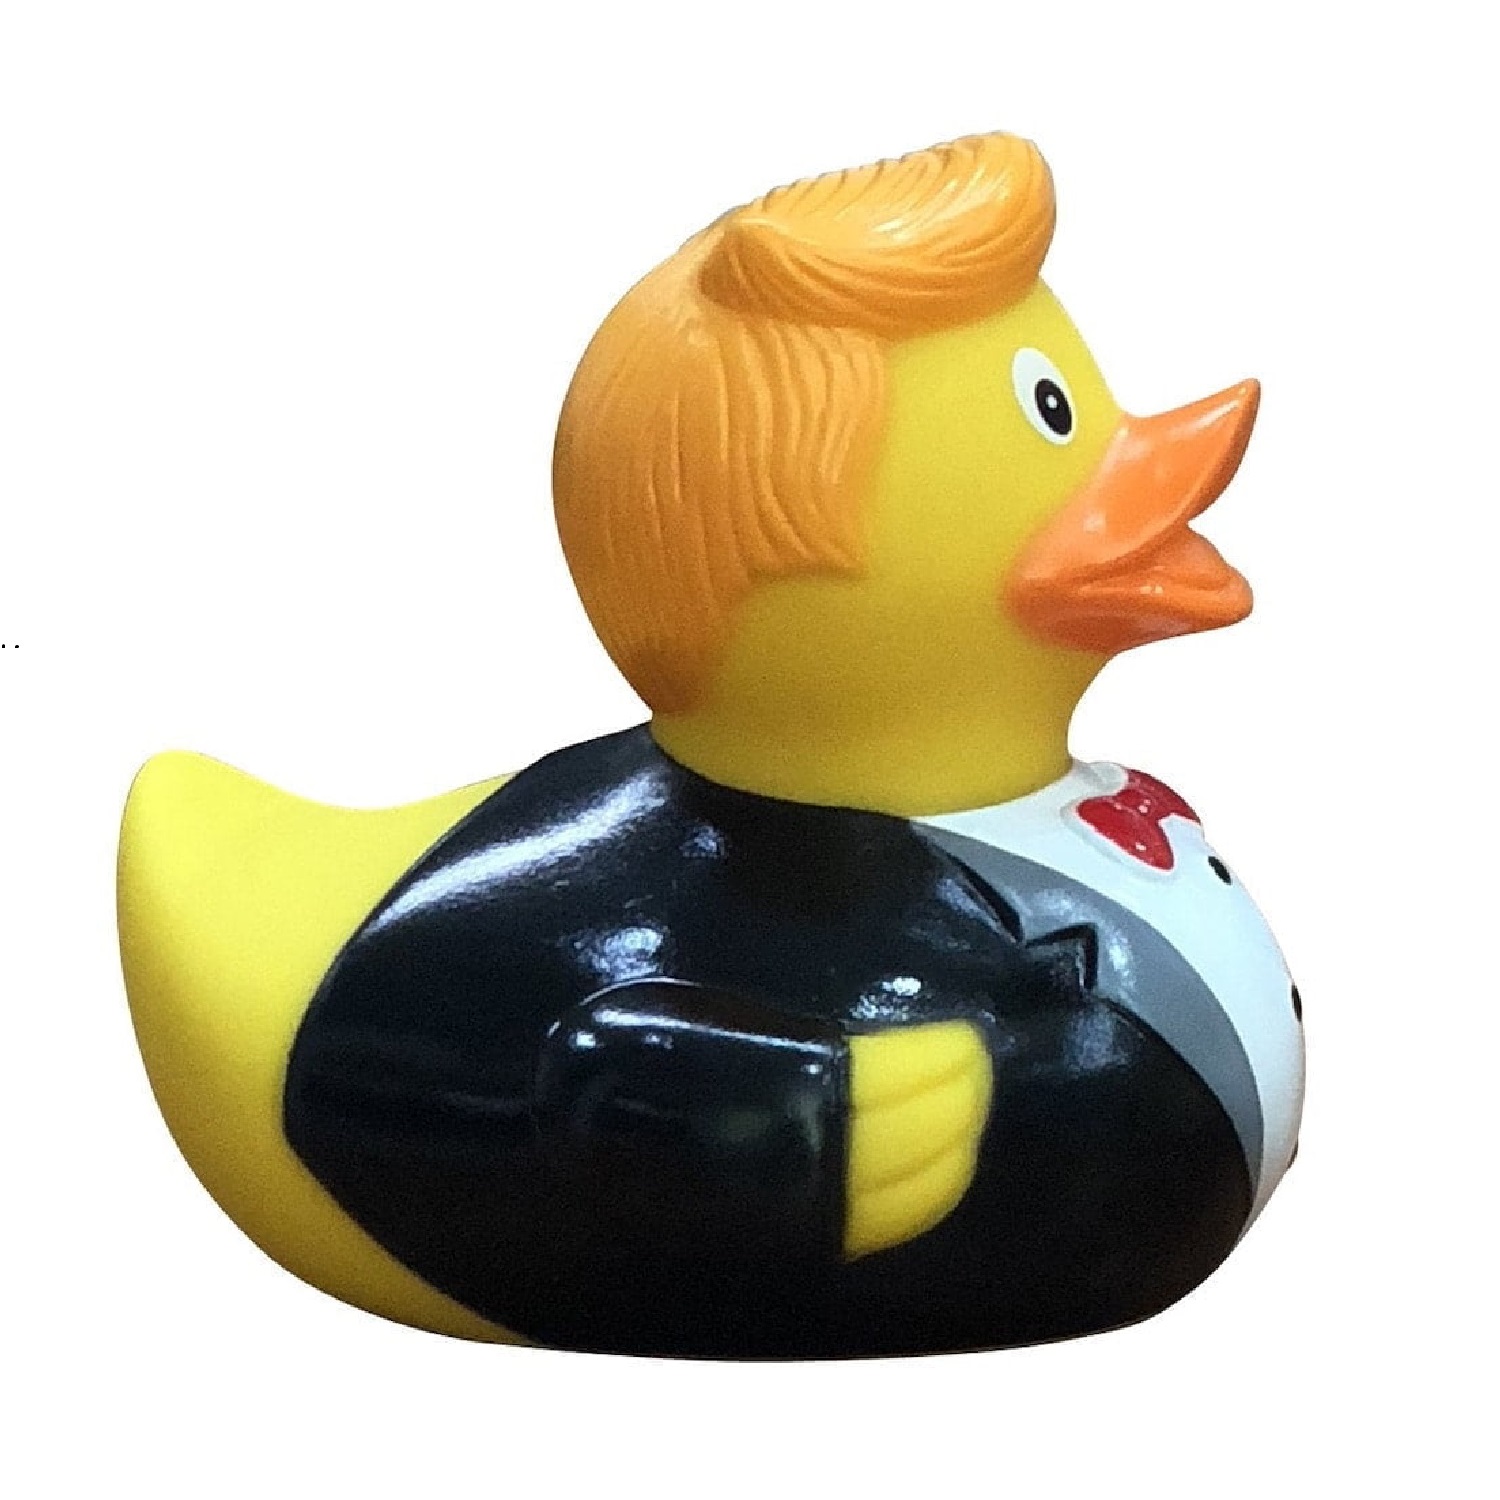 Игрушка Funny ducks для ванной Жених уточка 1823 - фото 2